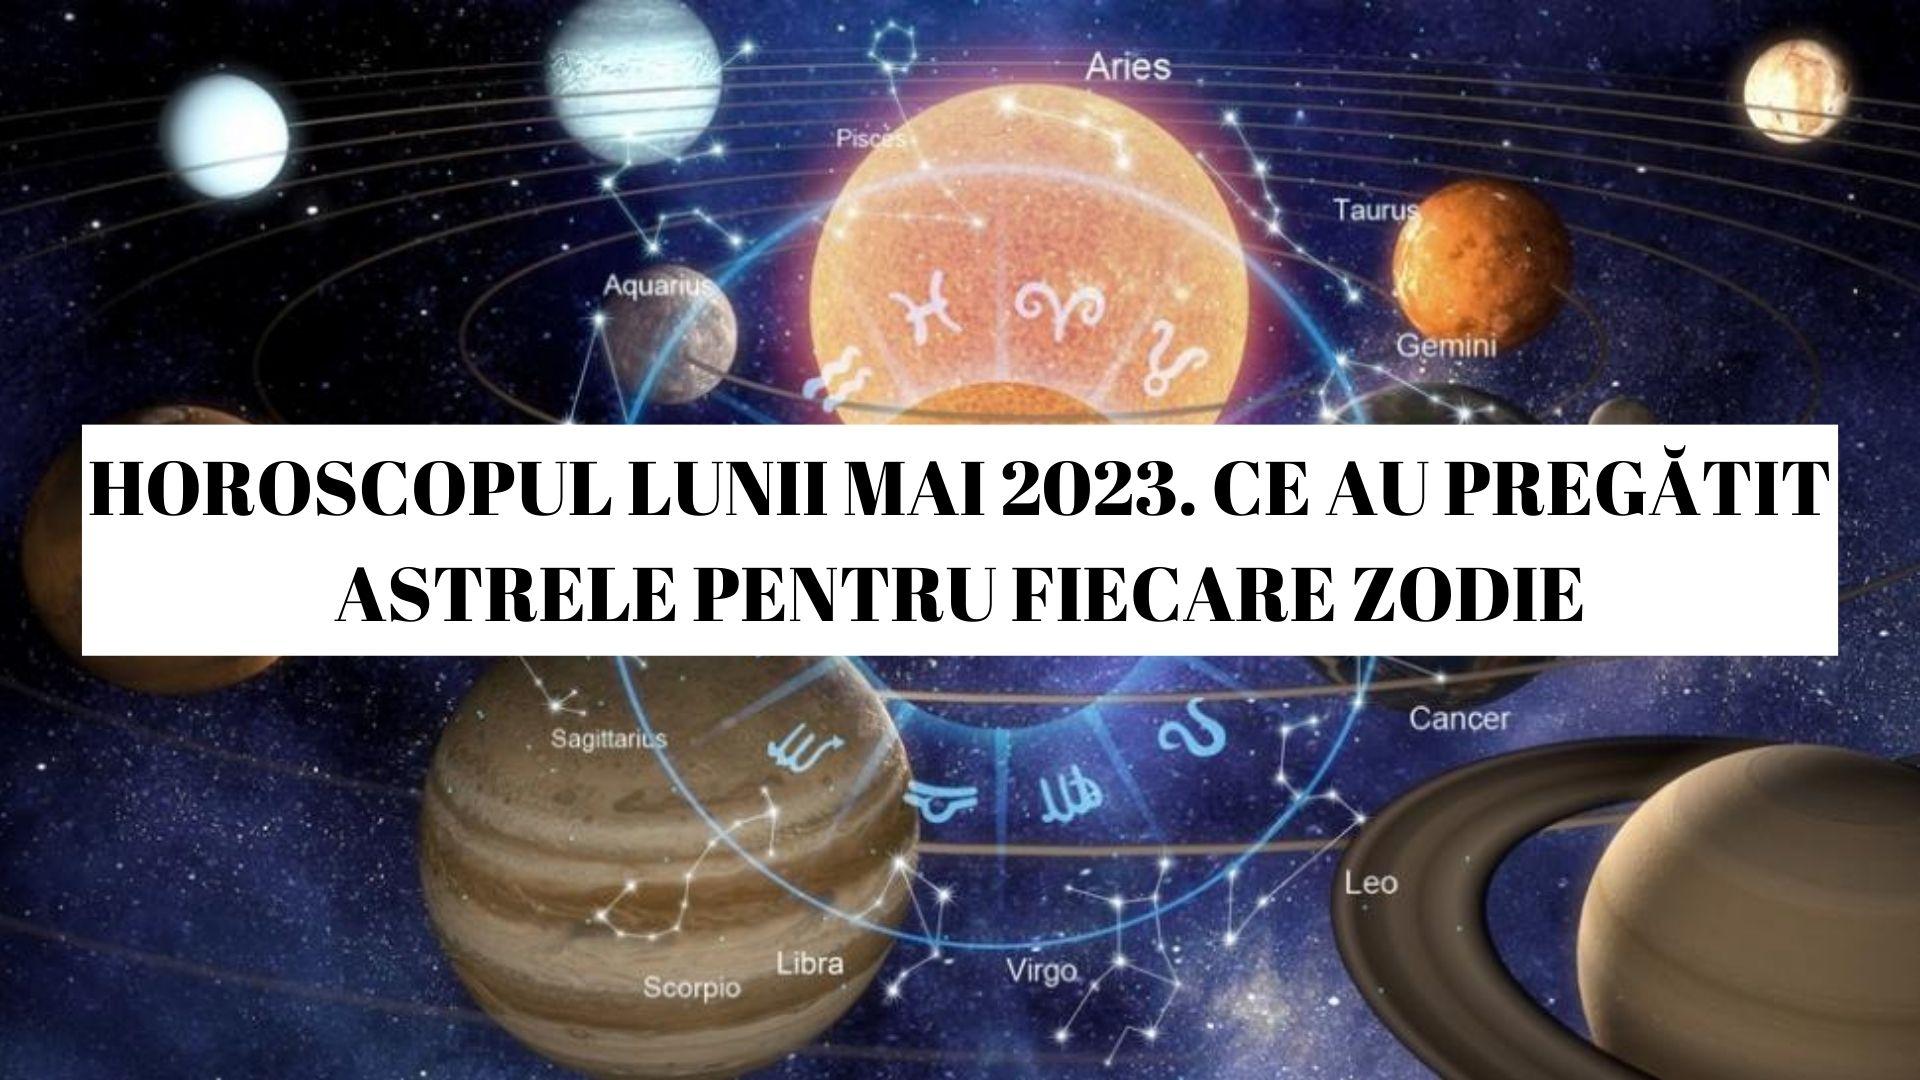 Horoscop mai 2023. Previziuni astrologice pentru toată luna. Câteva zodii trec prin încercări dificile